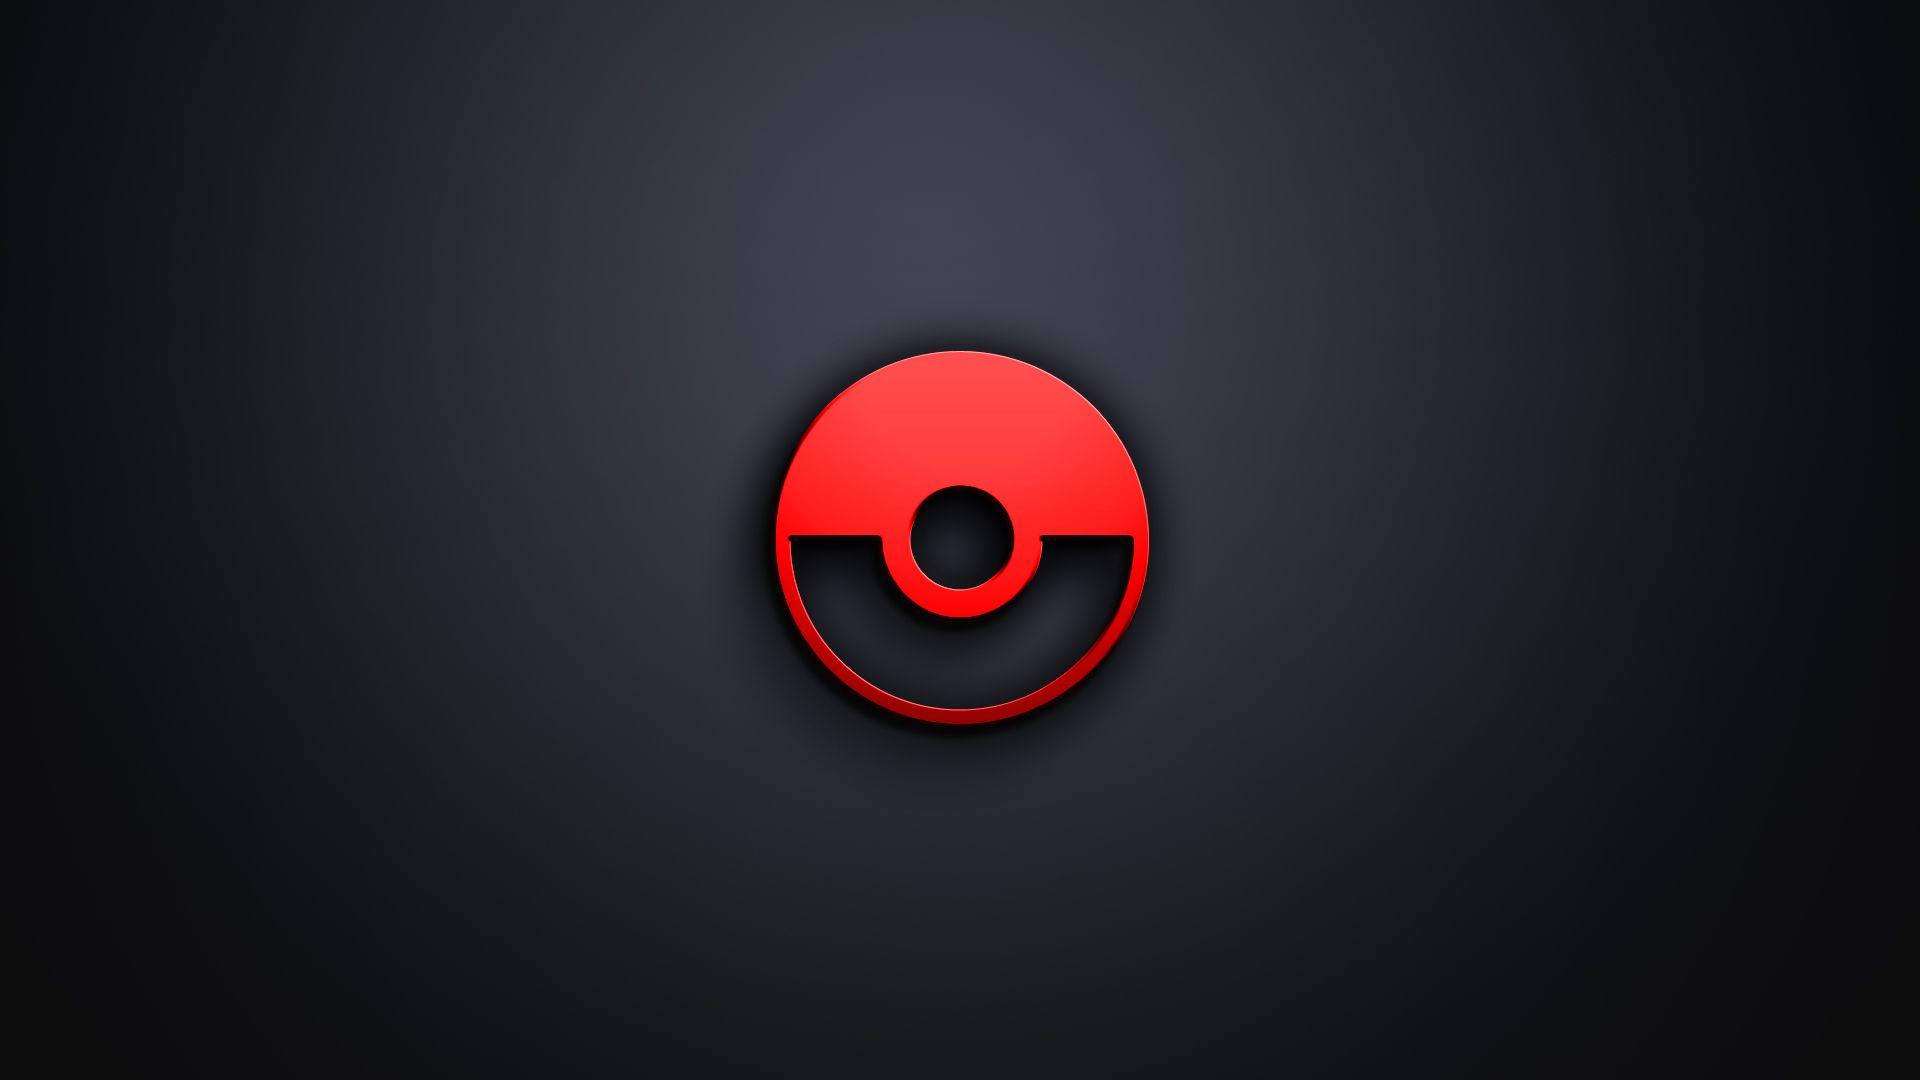 Pokeball Desktop Pokemon Ball Wallpaper HD For Mobile Phones Pics